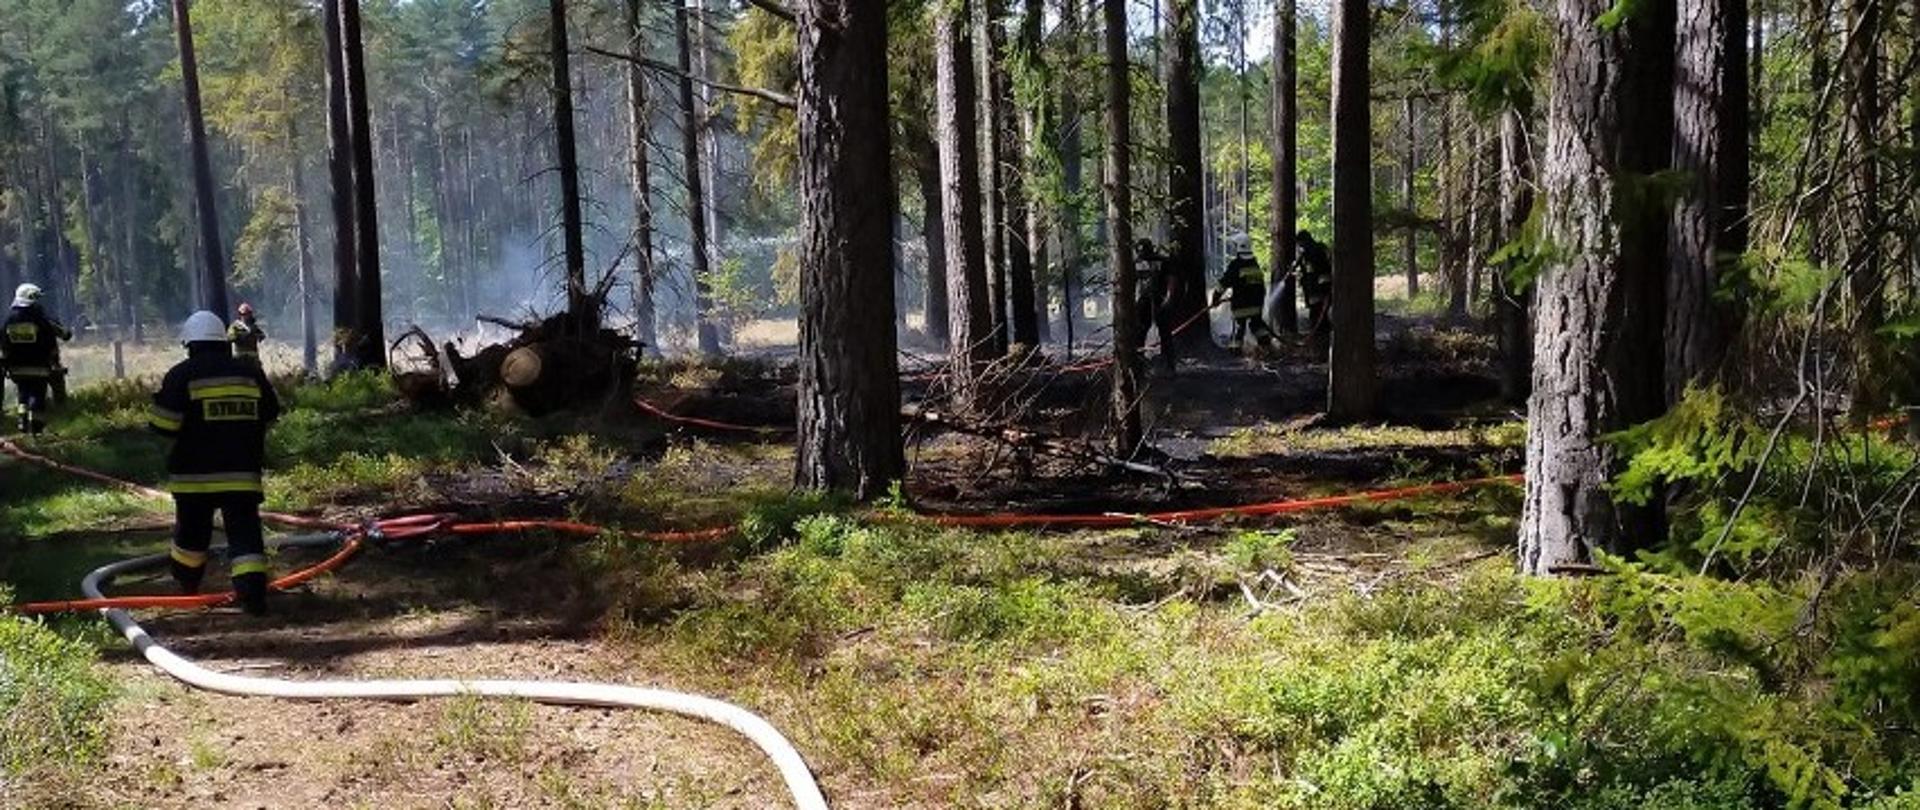 Zdjęcie zrobione zostało w lesie. Przedstawia strażaków pracujących na miejscu pożaru. Na ziemi leżą rozwinięte węże. Z ziemi unosi się dym, runo miejscami jest czarne po pożarze.